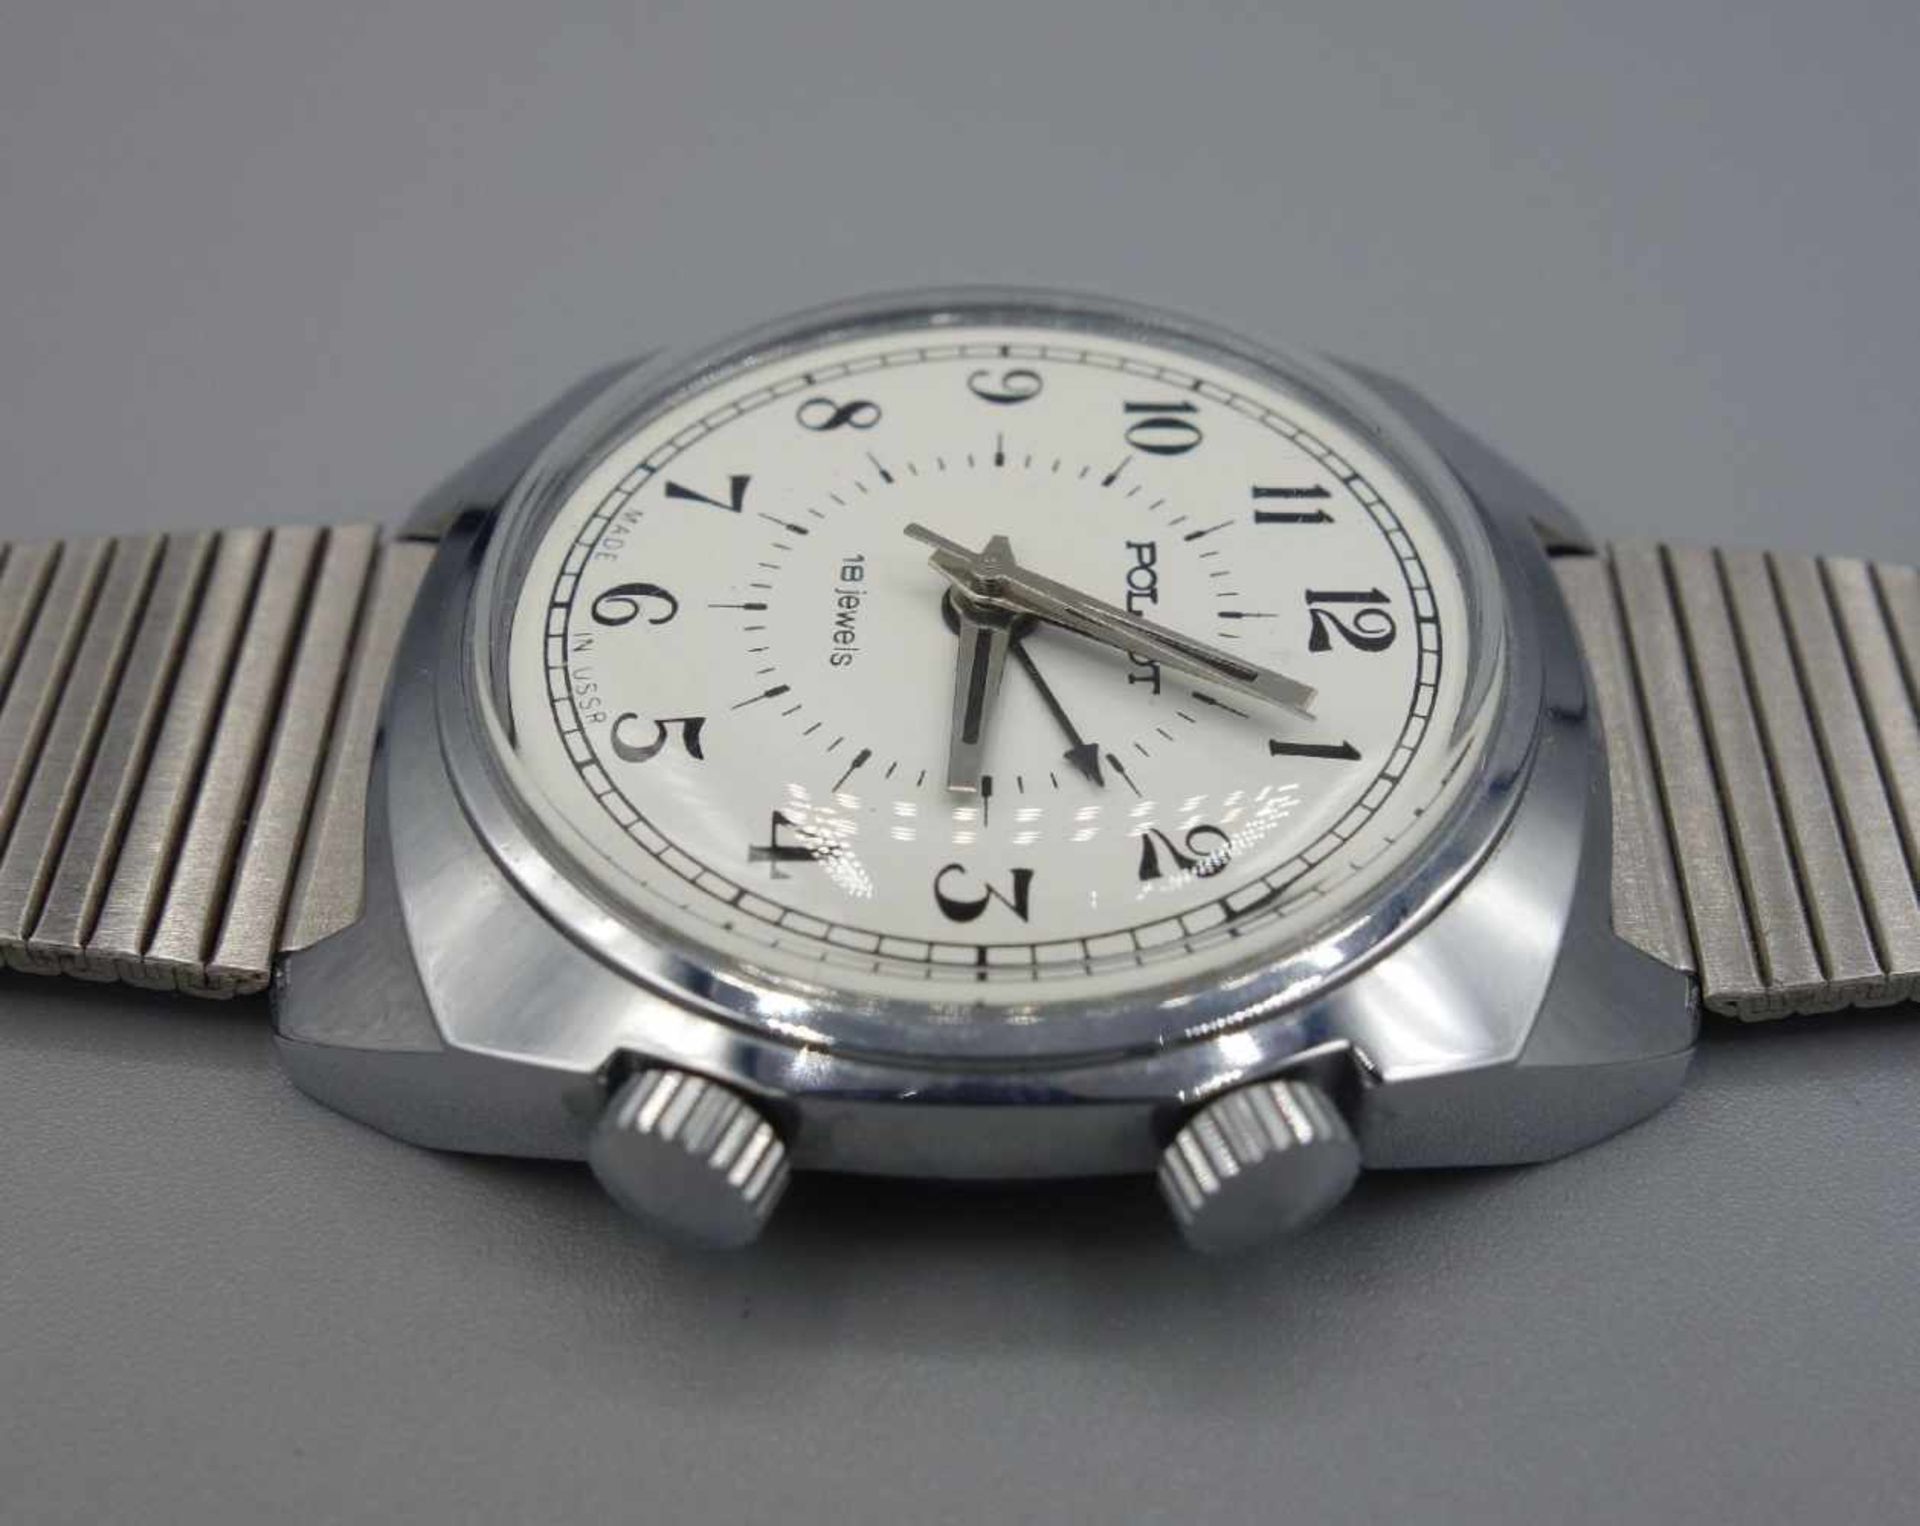 ZWEI ARMBANDUHREN MIT WECKFUNKTION / wristwatches, Russland, Manufaktur Poljot. Handaufzug. 1) - Image 3 of 8